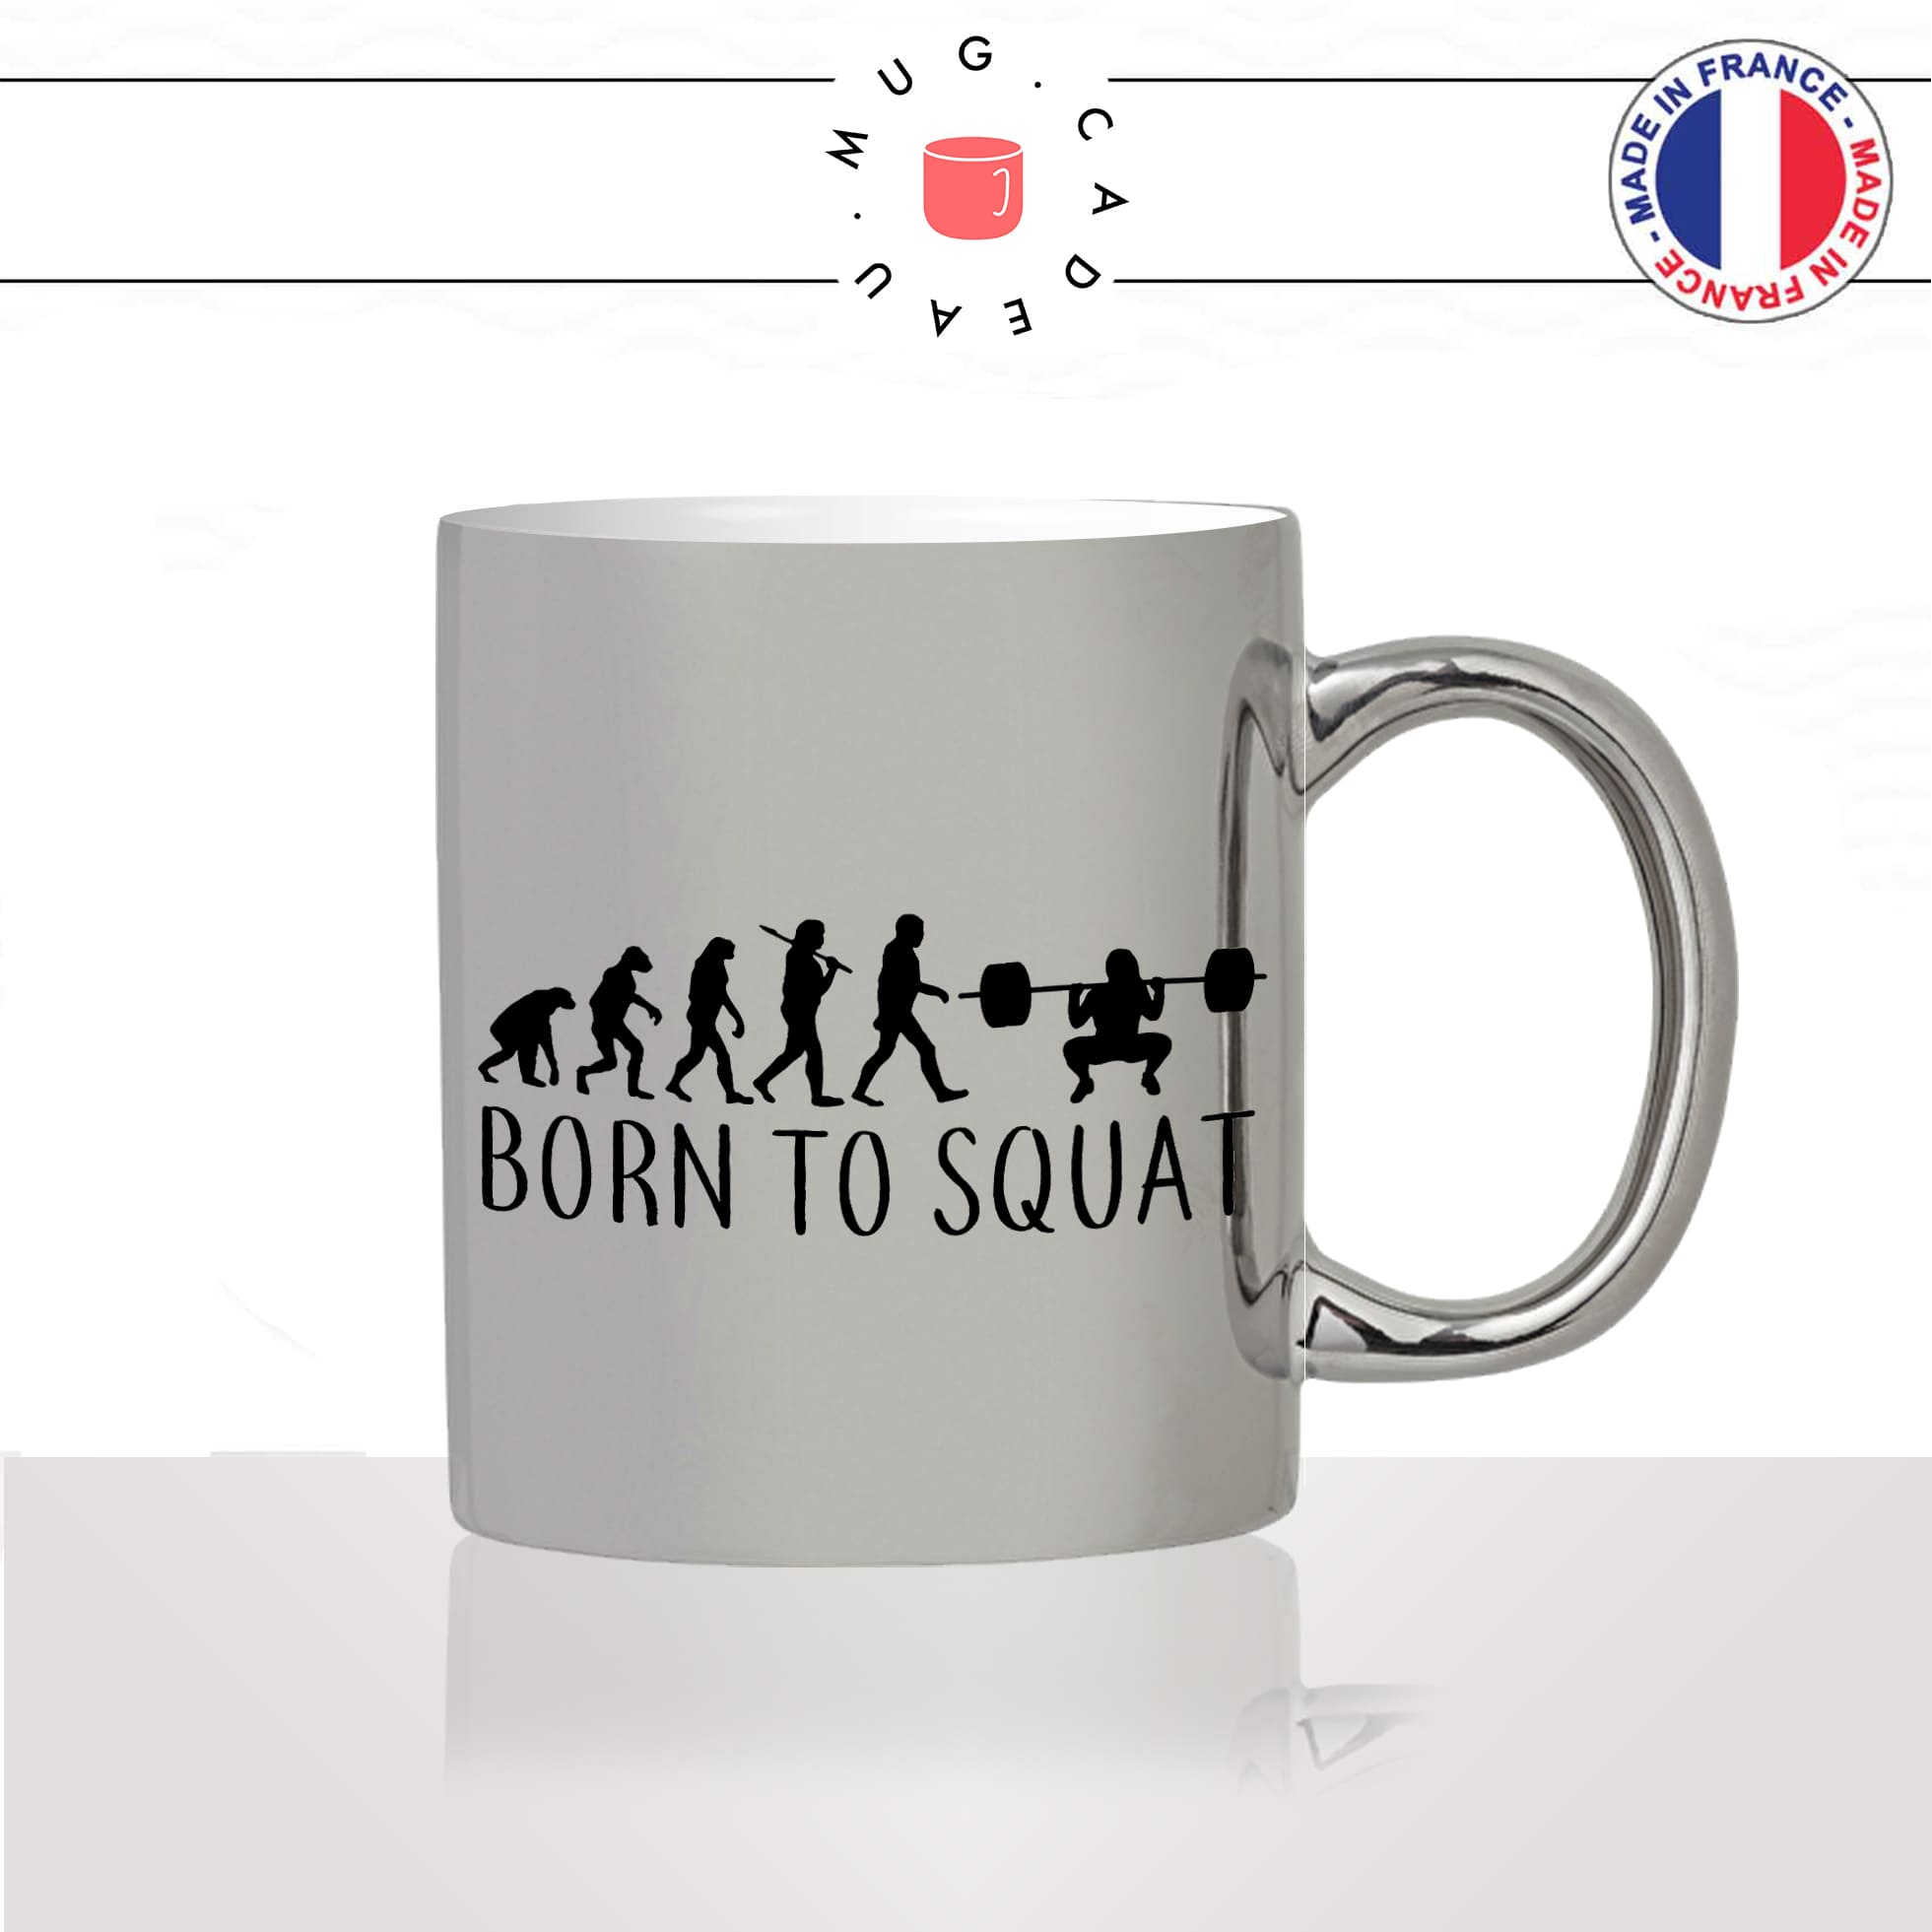 mug-tasse-argent-argenté-silver-born-to-squat-evolution-humaine-sport-fitness-fitgirl-glute-musculation-humour-idée-cadeau-fun-cool-café-thé2